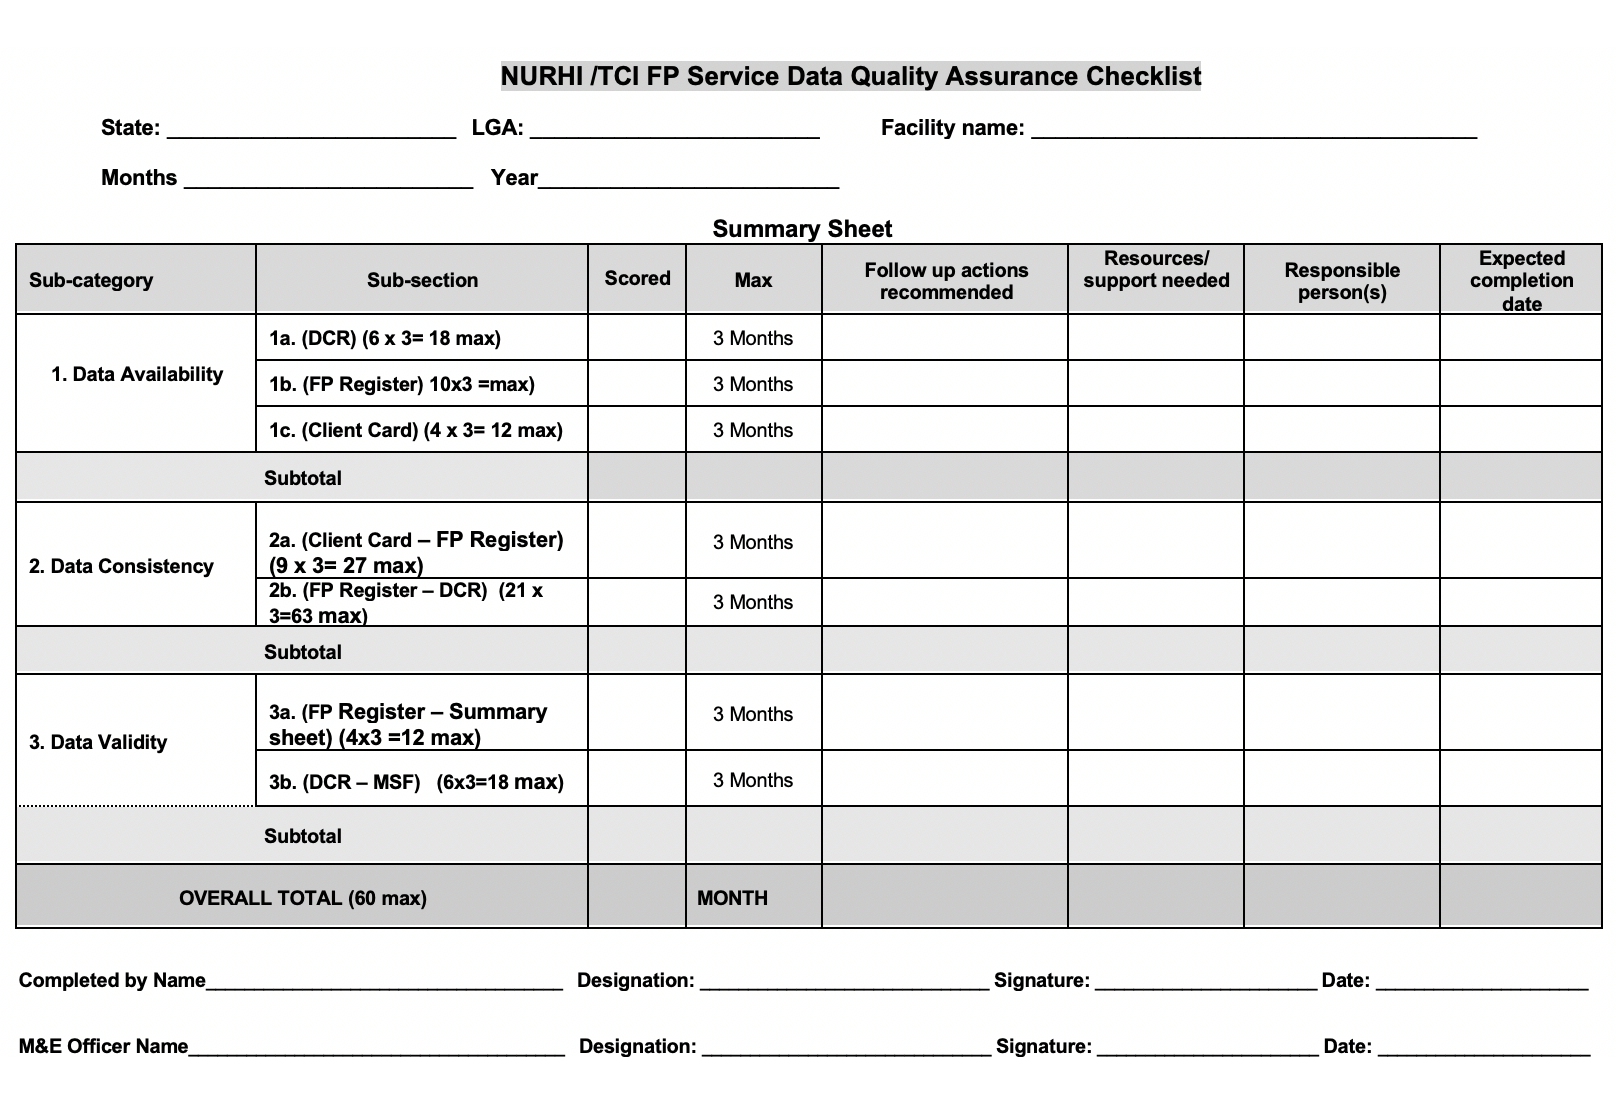 NURHI / TCI FP सेवा डेटा गुणवत्ता आश्वासन चेकलिस्ट